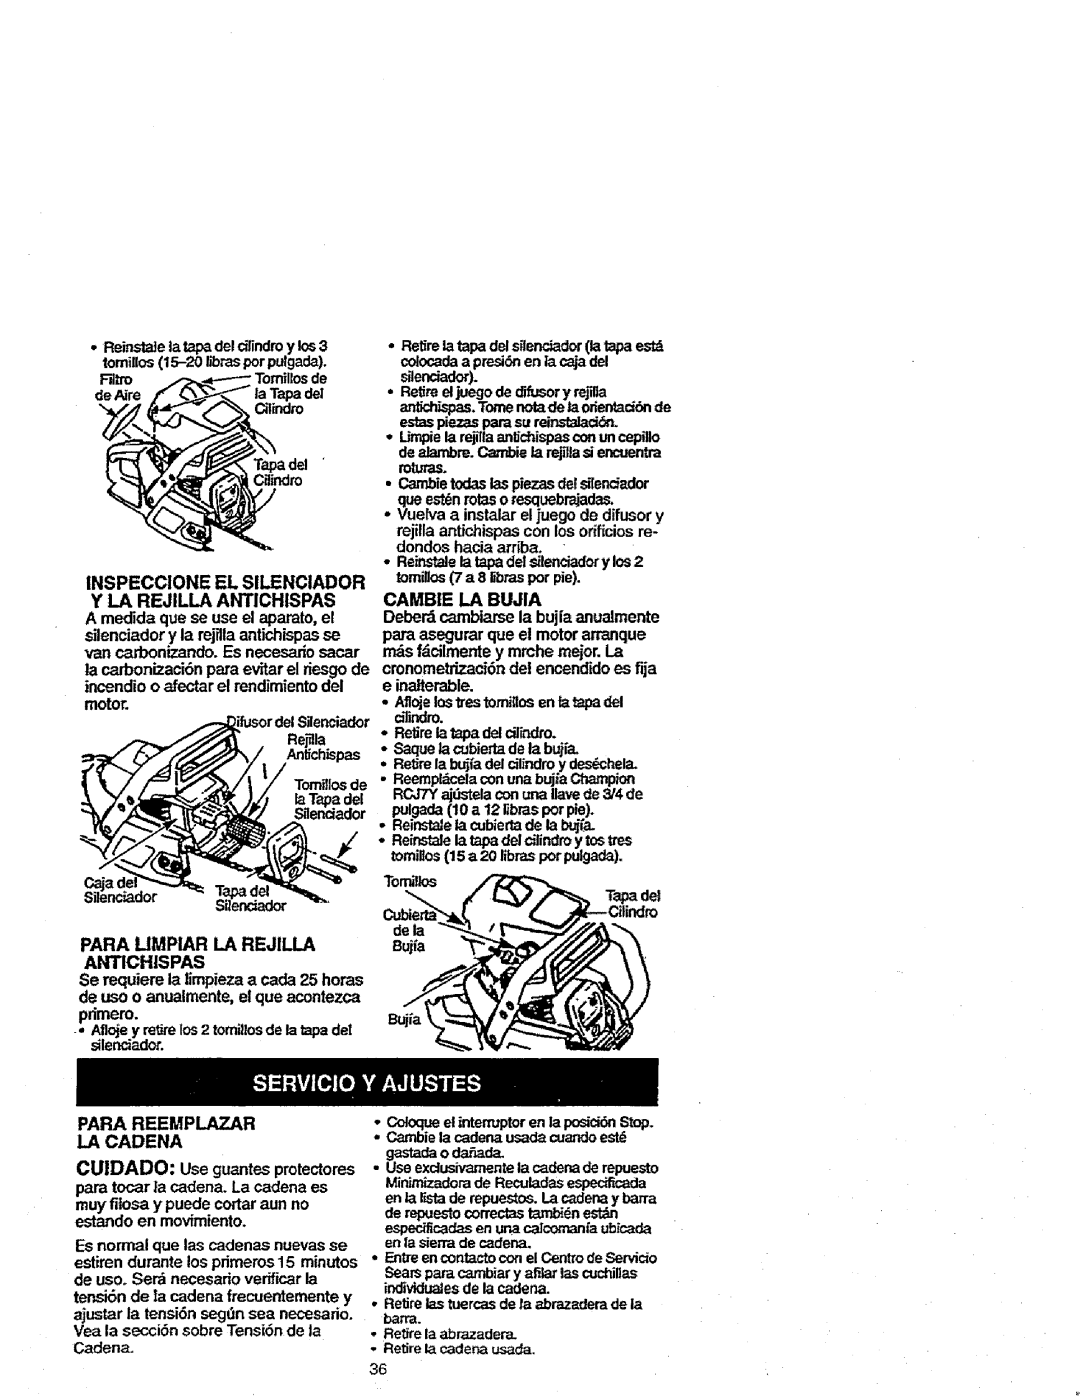 Craftsman 358.352680 - 18 IN. BAR manual CUIDADO: Usegua_tesprotectores, Para Reemplazar, La Cadena, estandoen movimiento 